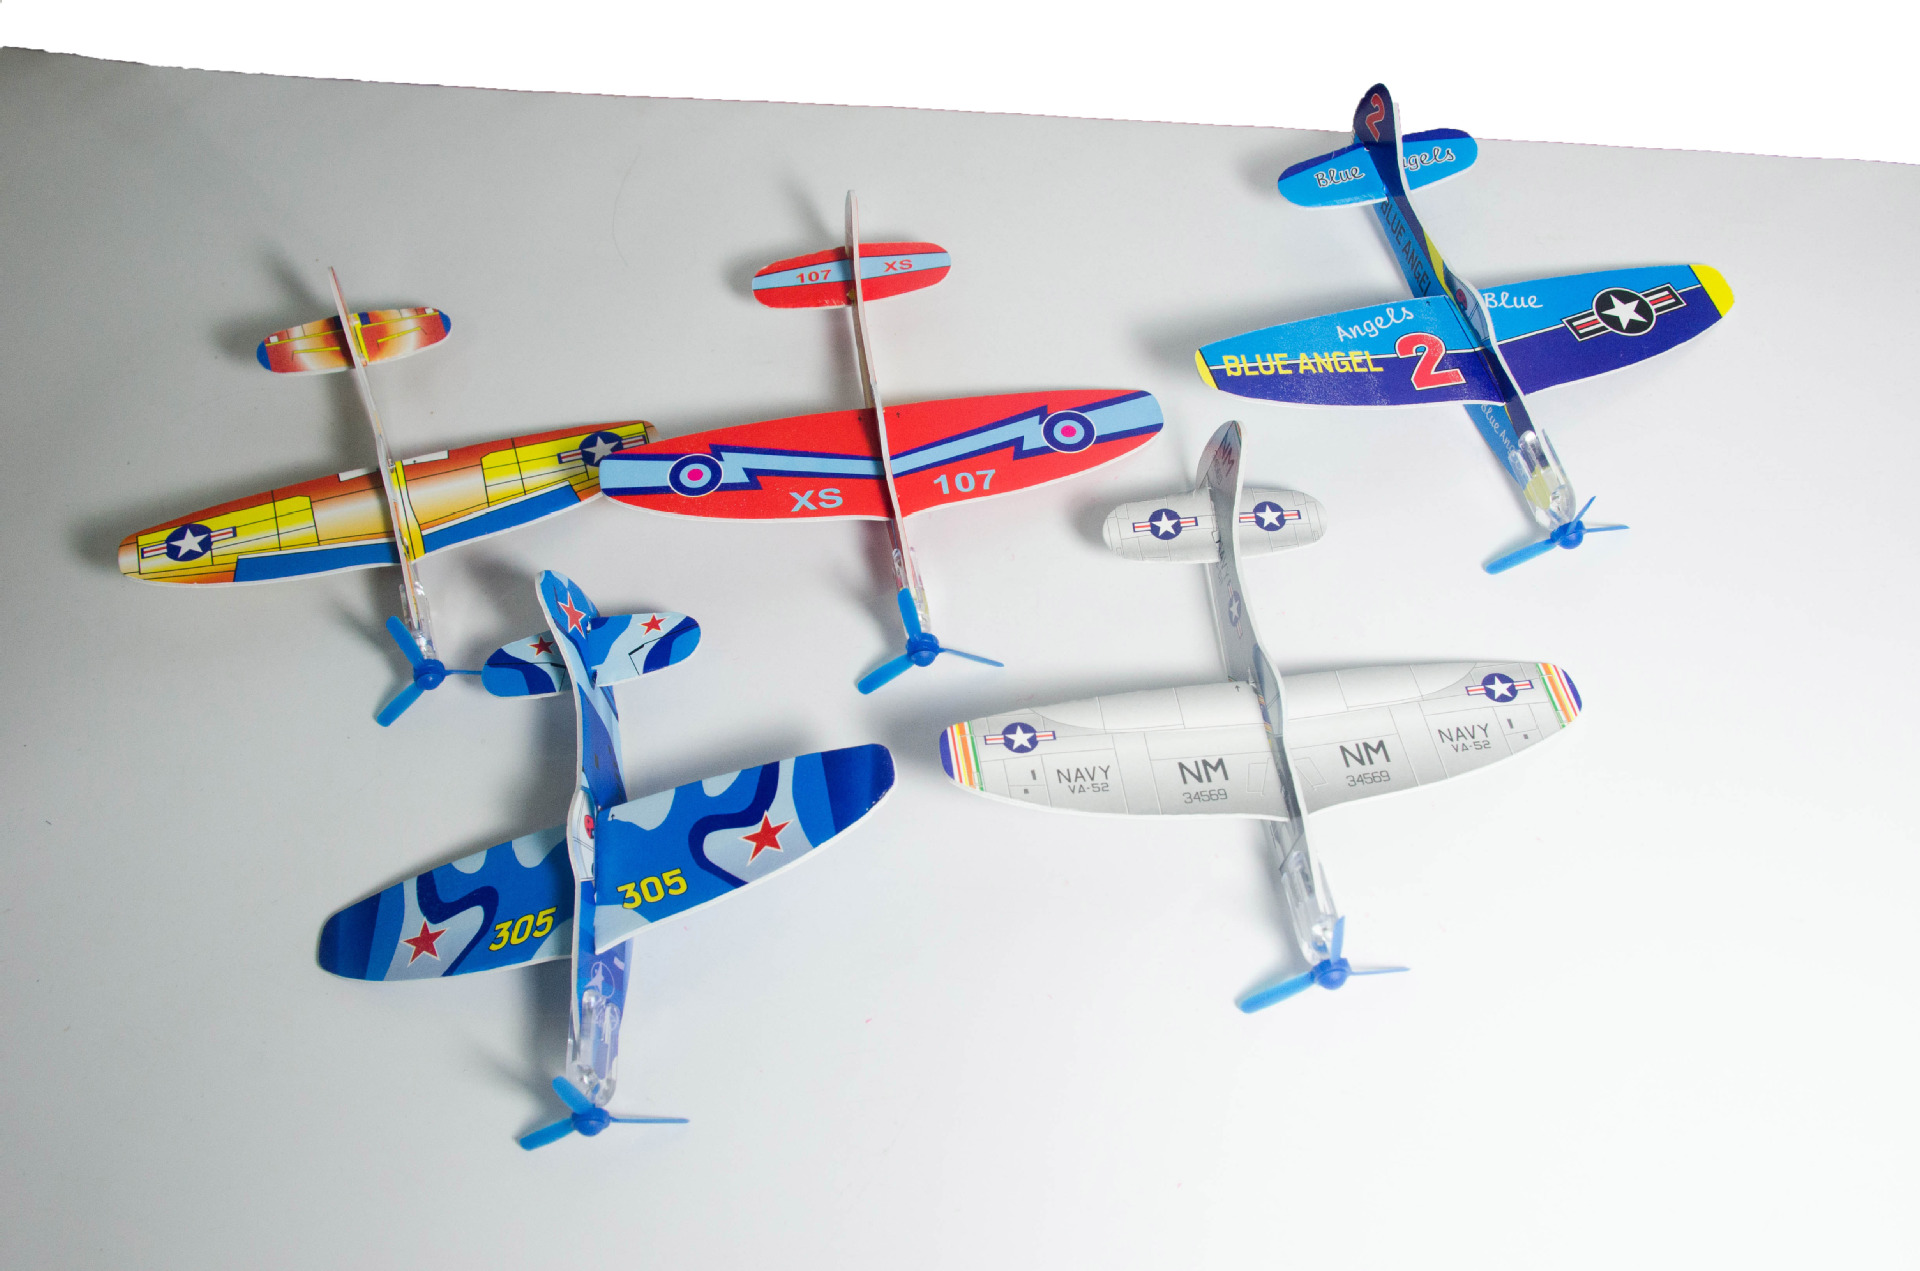 纸飞机 泡沫飞机 神奇飞机 儿童玩具 新奇玩具 cl-609d